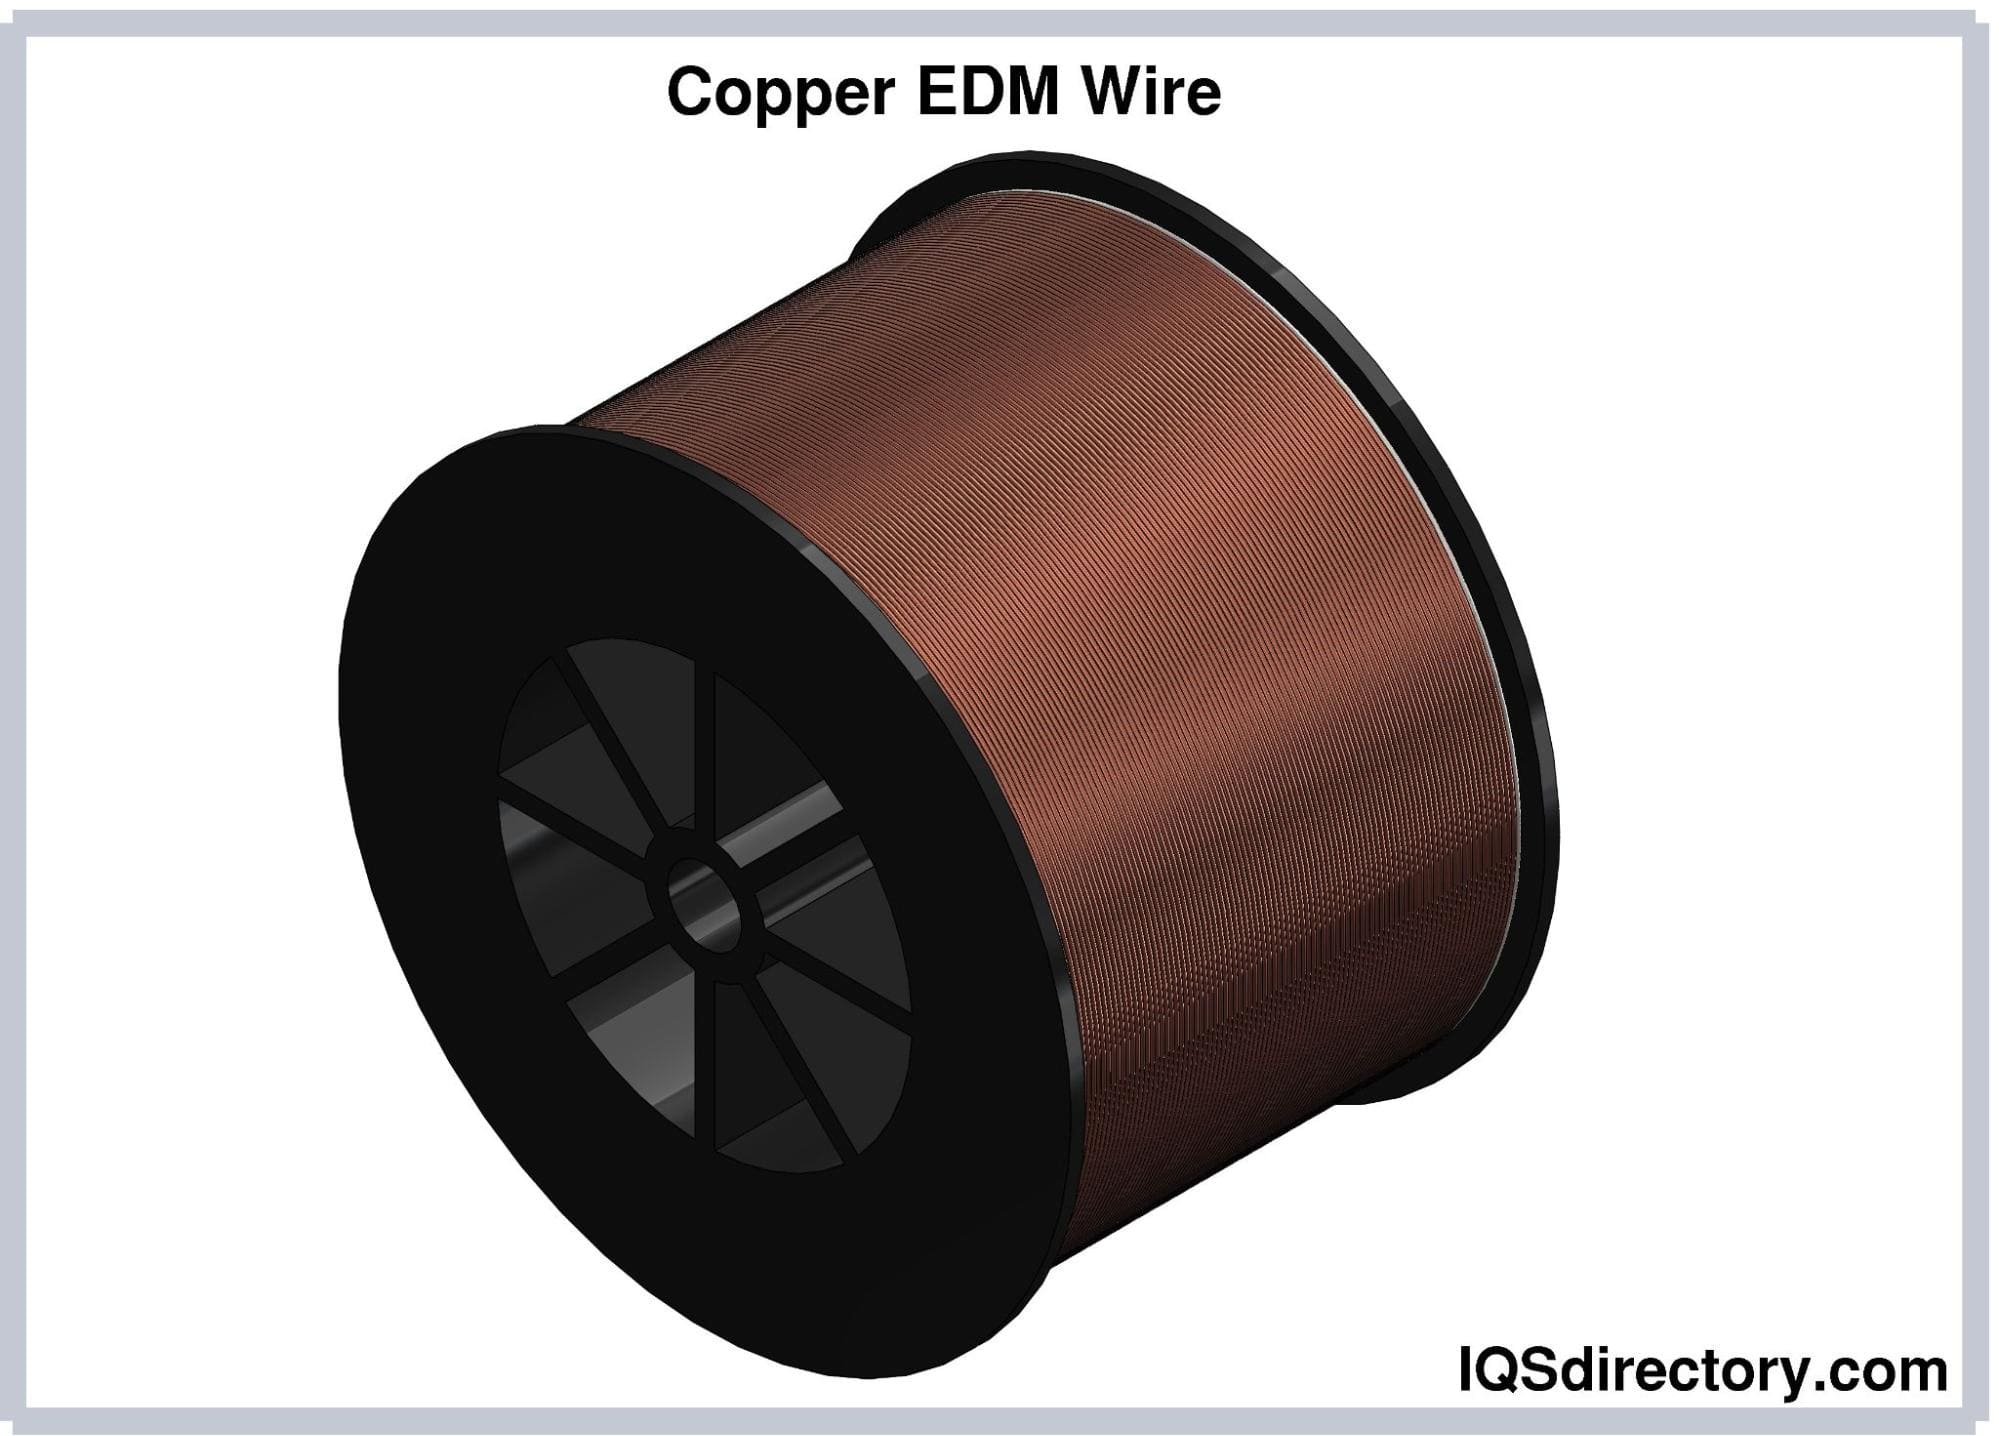 Copper EDM Wire